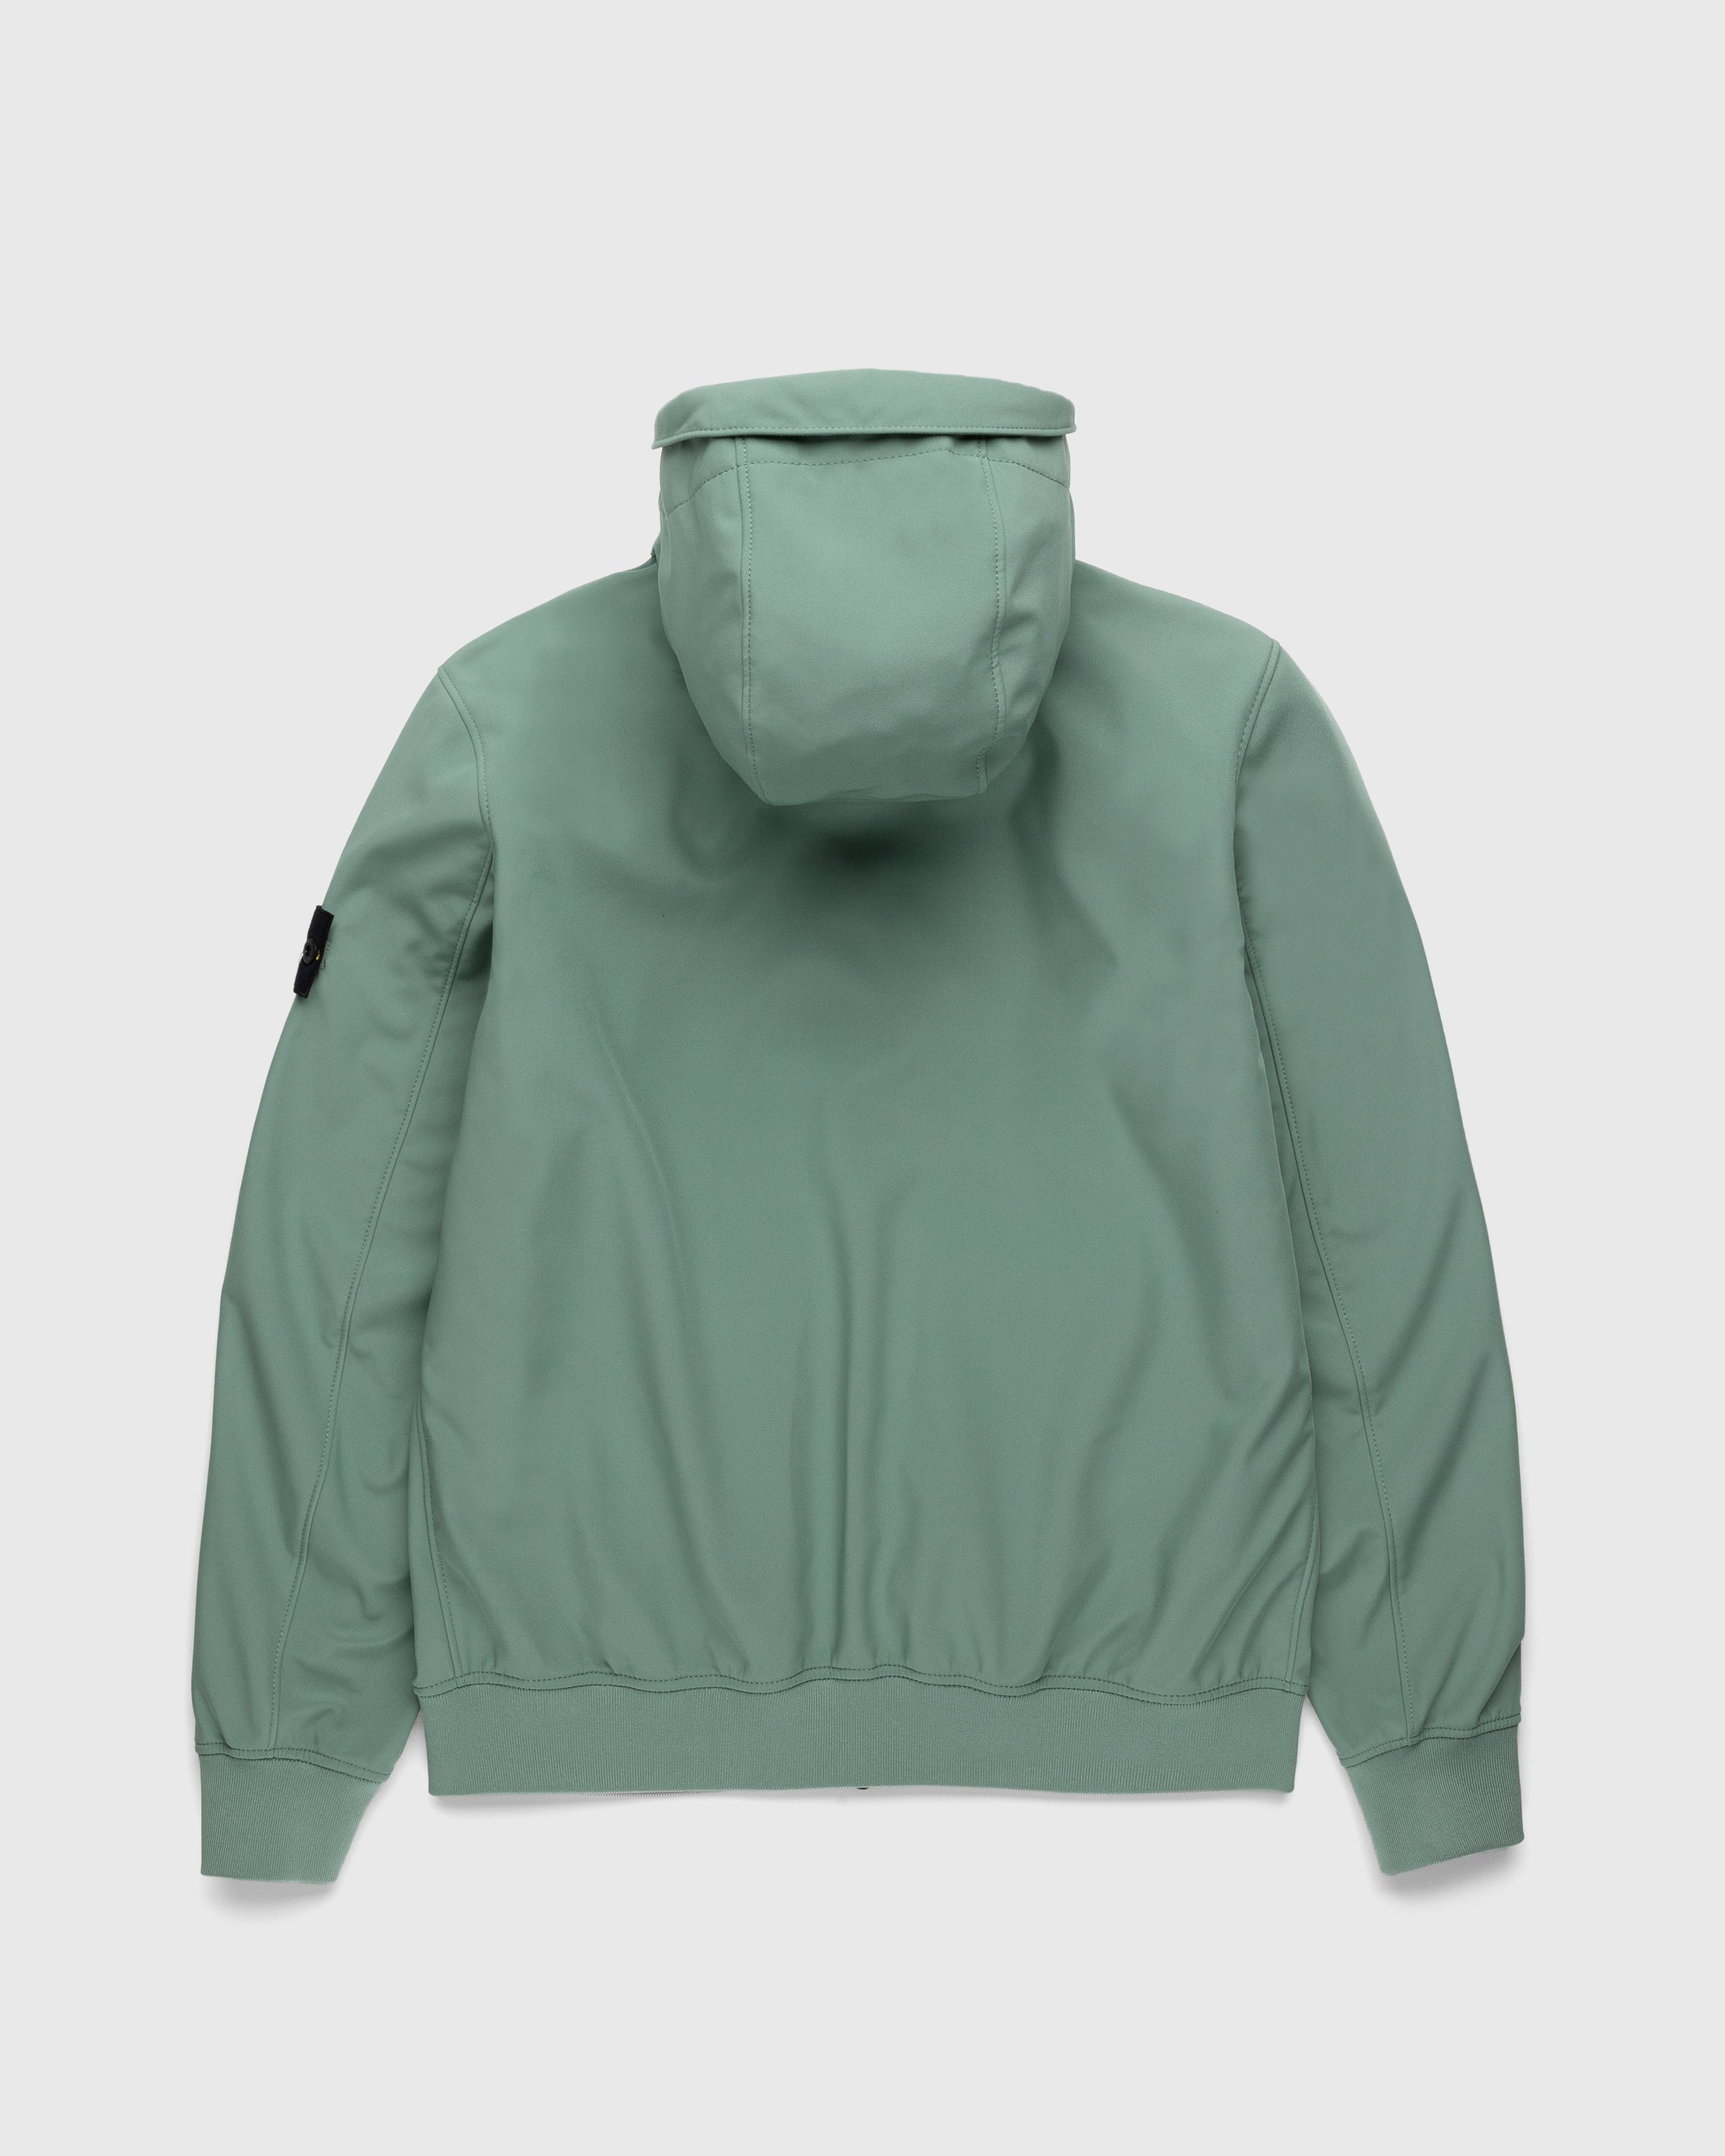 Stone Island - Soft Shell Hooded Jacket Sage - Clothing - Green - Image 2